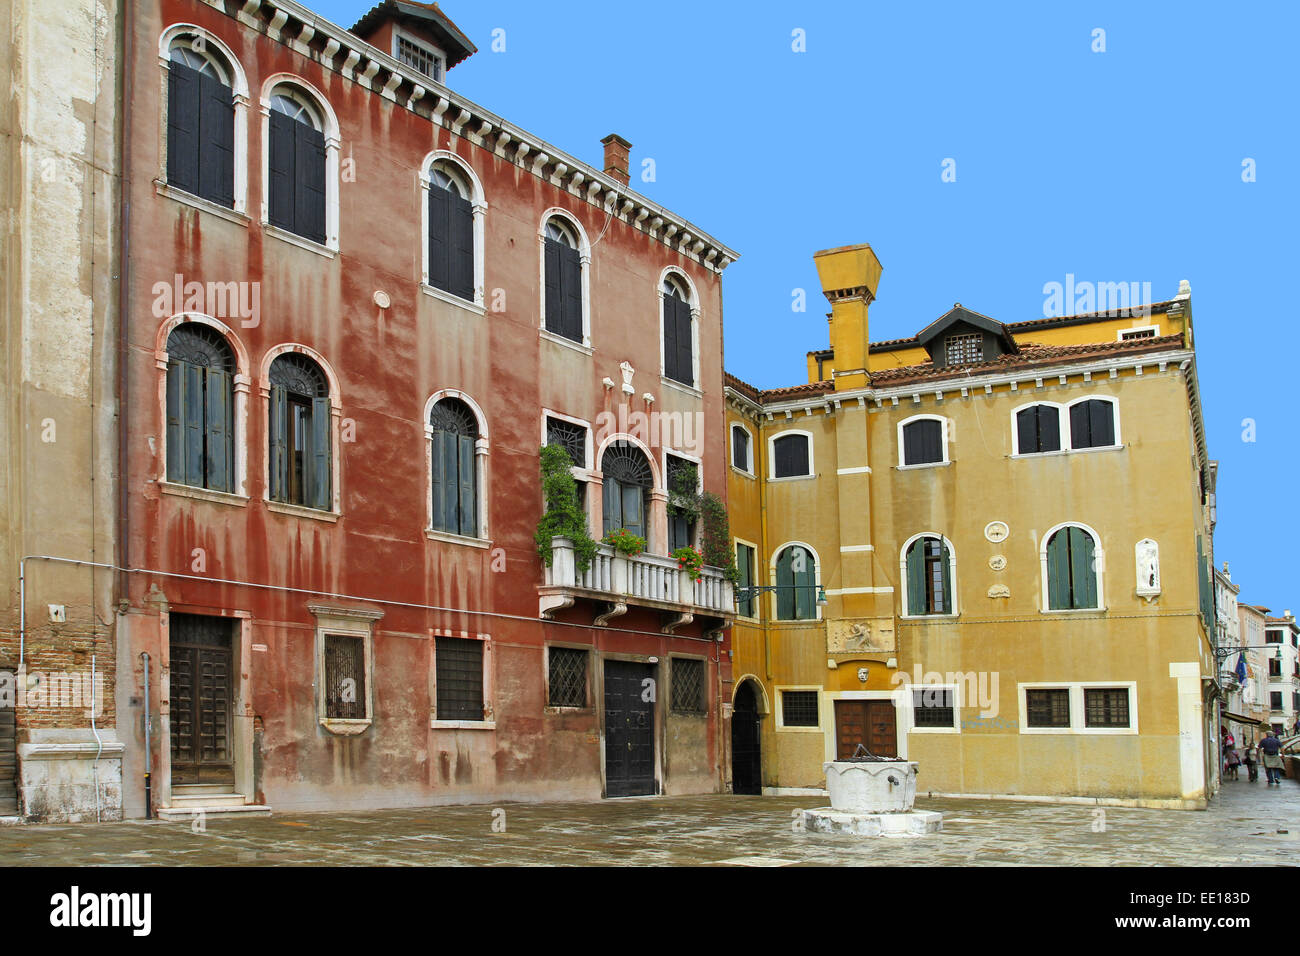 Alte Haeuser im Stadtteil Dosoduro, Venedig, Italien Stock Photo